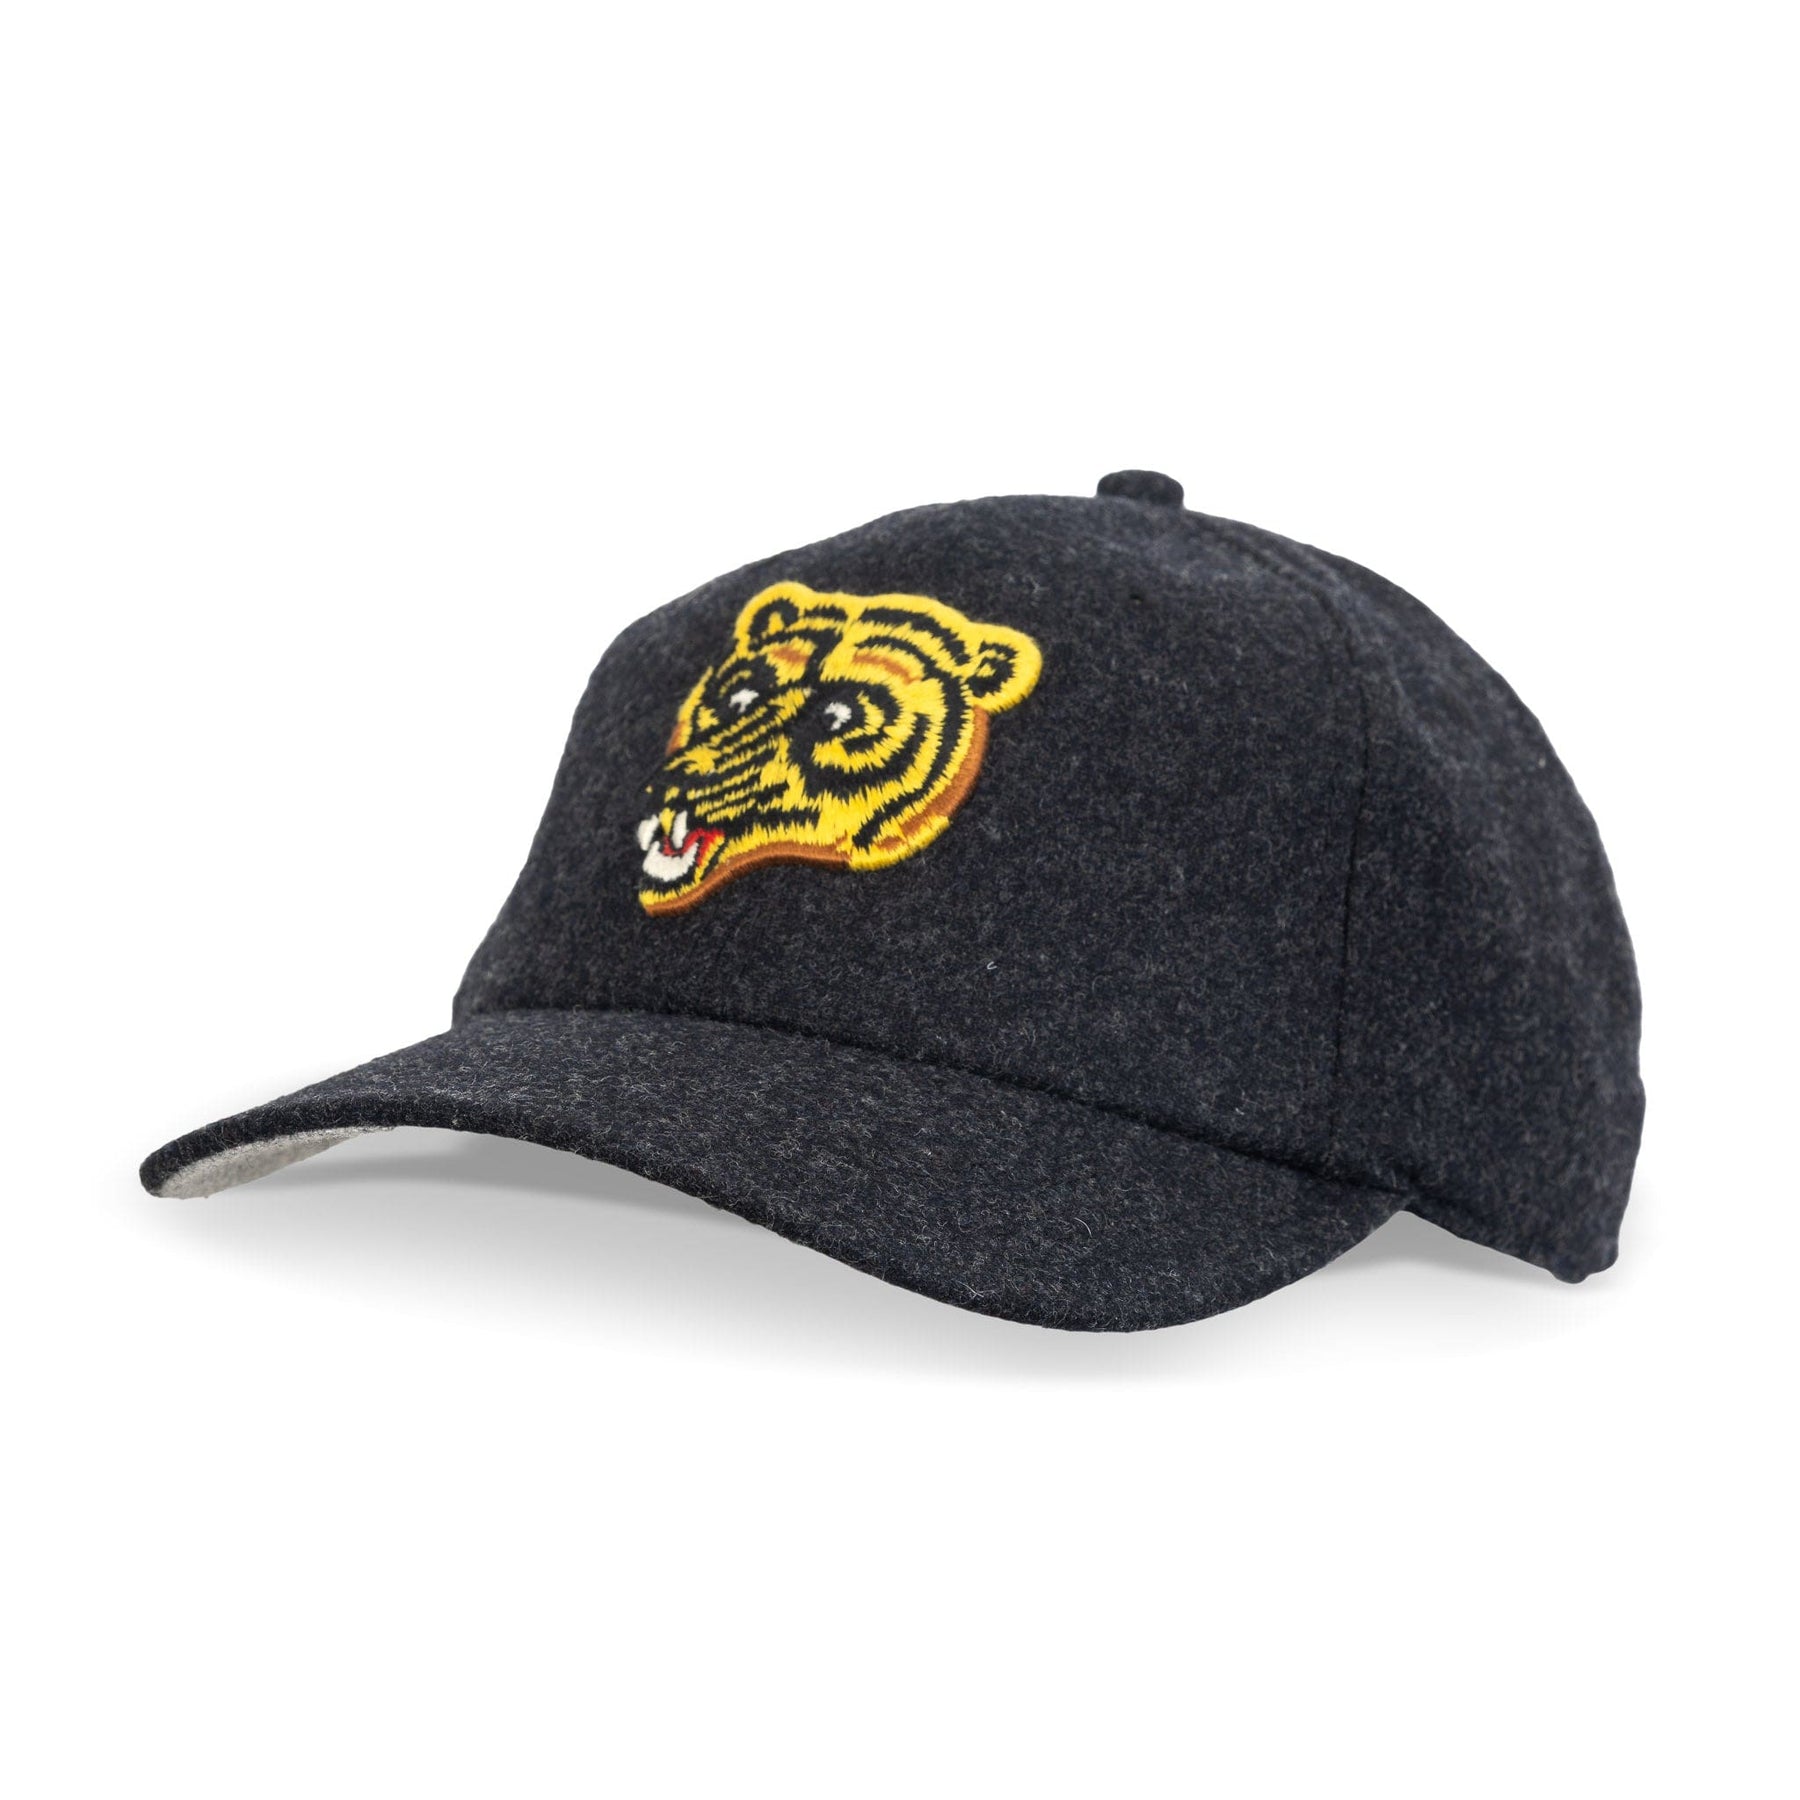 American Needle NHL Vintage Archived Legend Adjustable Hat - Boston Bruins